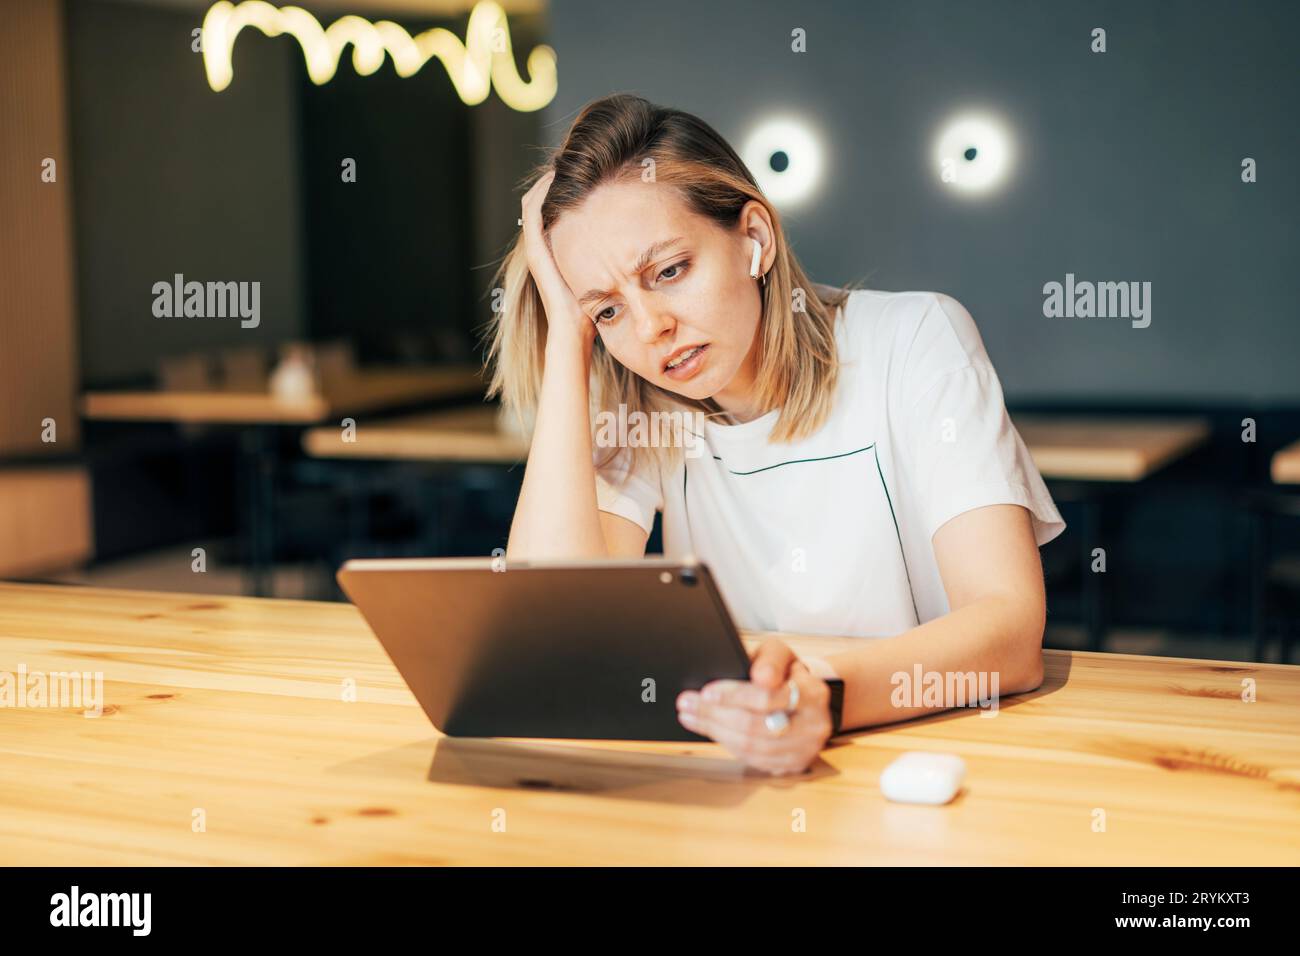 Verärgert stressige Frau schaut auf den Bildschirm eines digitalen Tablets. Enttäuschung am Arbeitsplatz Stockfoto